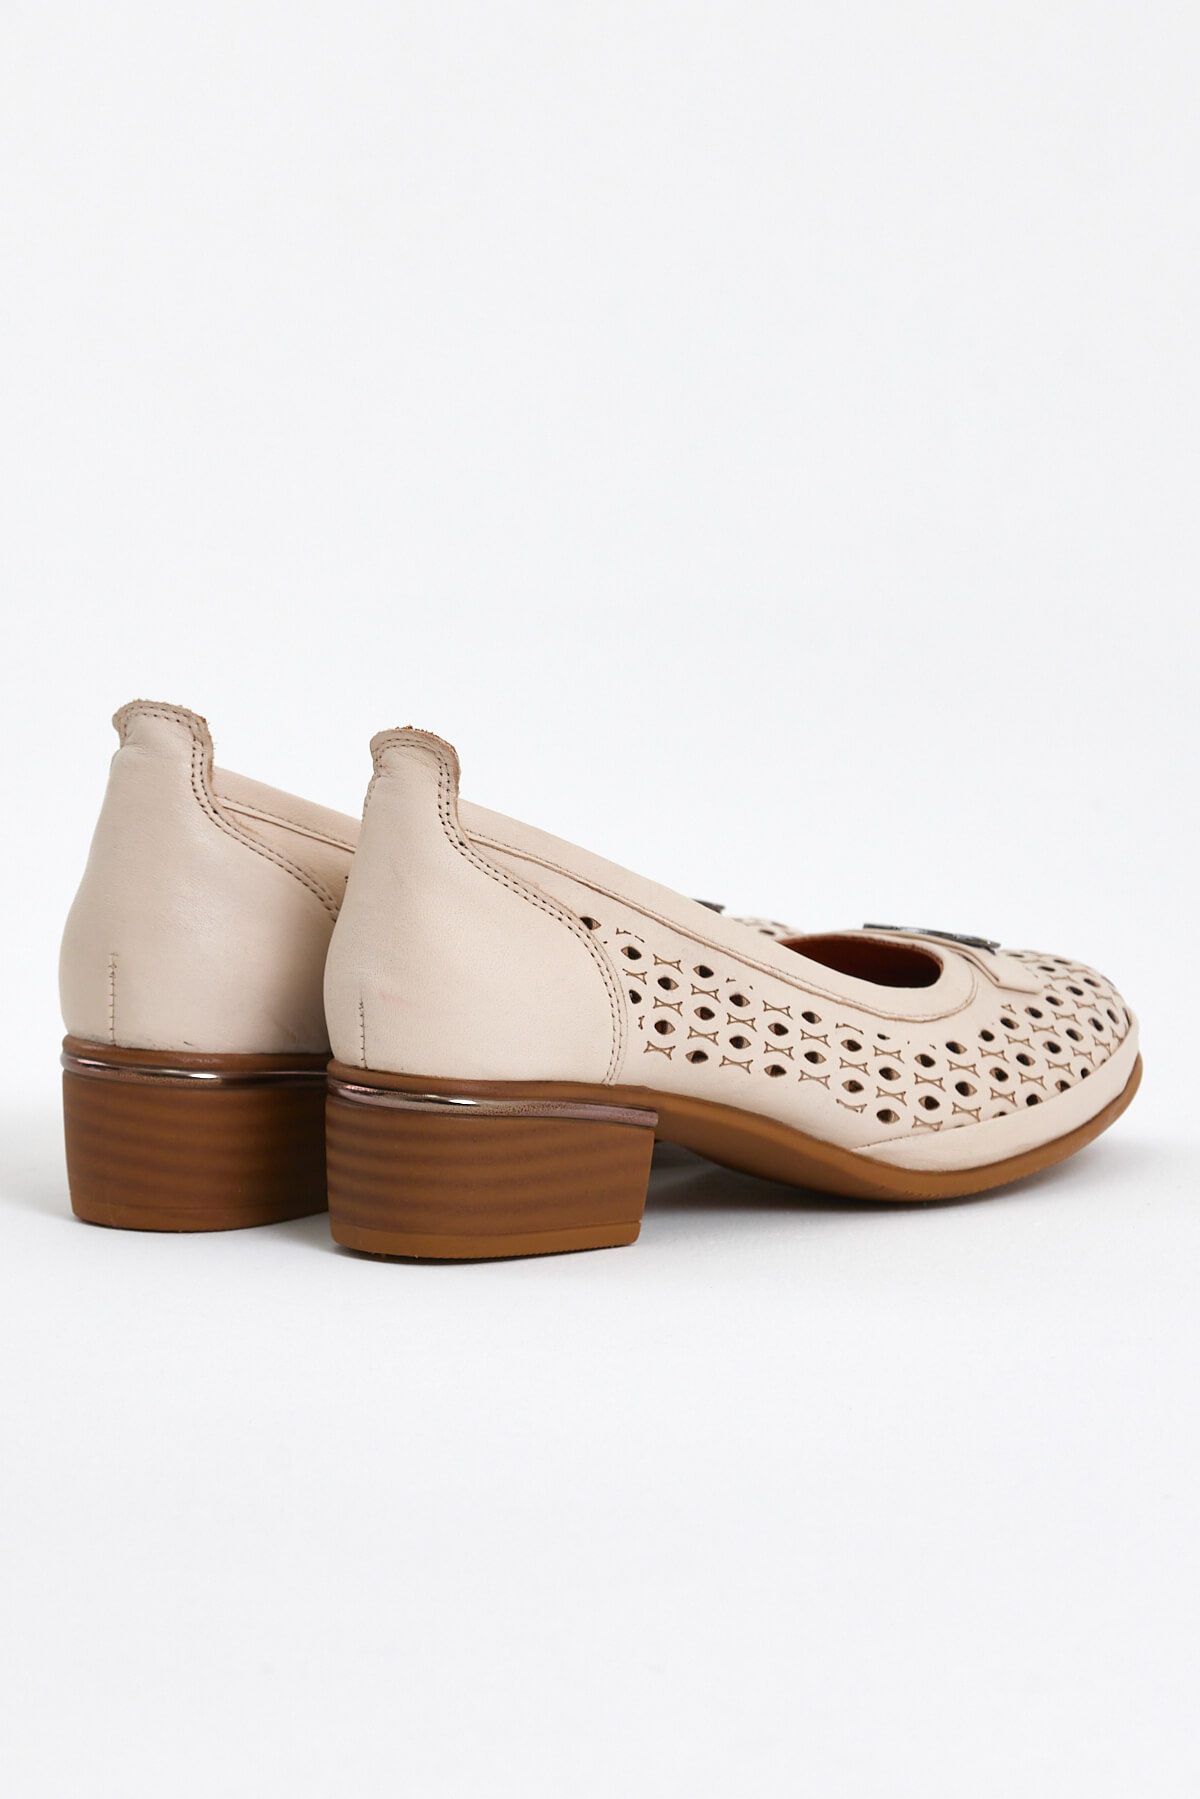 Kadın Topuklu Deri Ayakkabı Bej 2312502Y